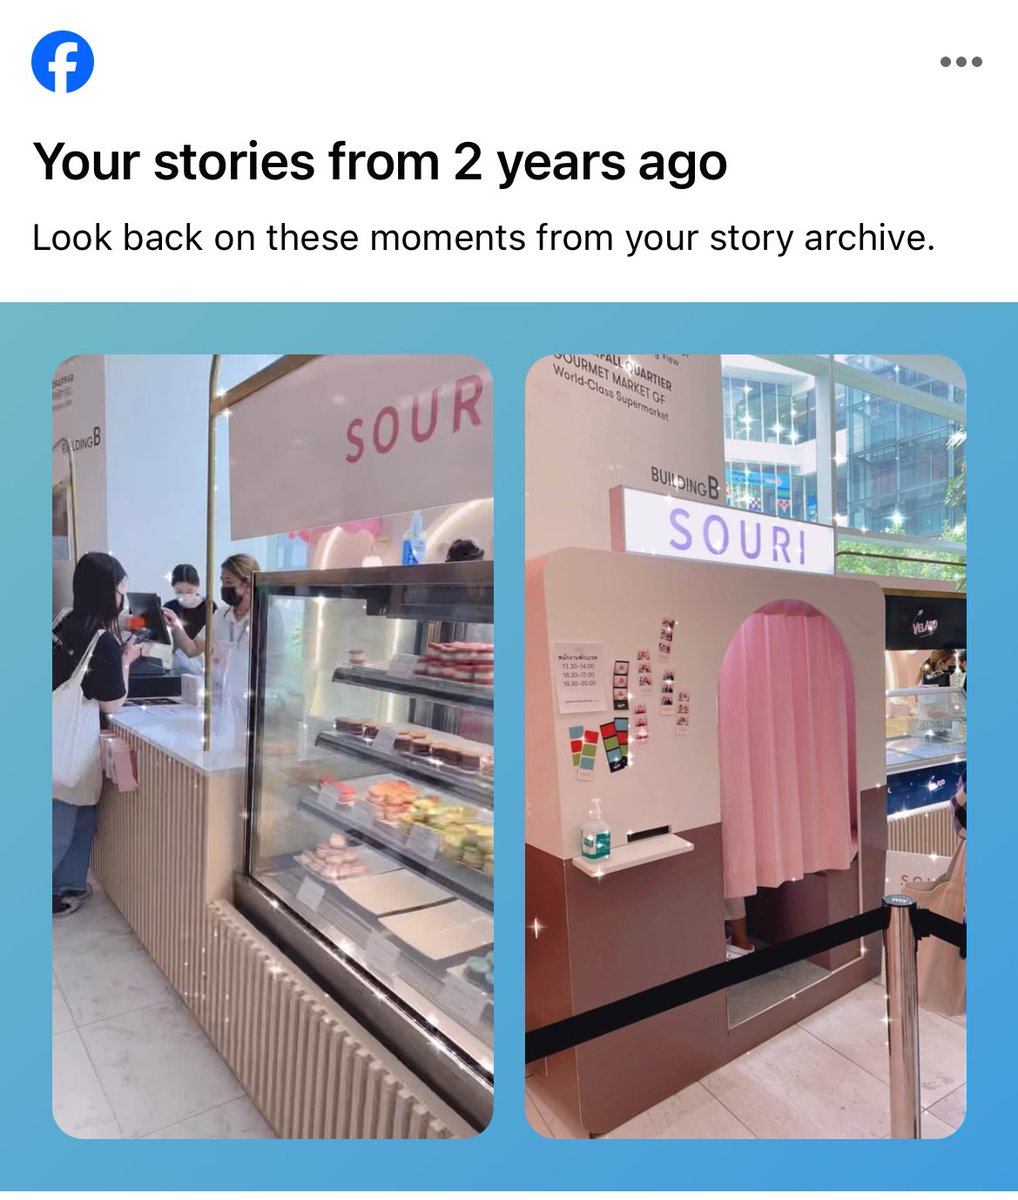 วันนี้เมื่อ 2 ปีที่แล้วแวะไปซื้อมาการองและถ่ายตู้สติ๊กเกอร์ที่ Emquartier อยู่เลย เวลาผ่านไปไวมาก 😍

#souribkk #souri
#winmetawin @winmetawin